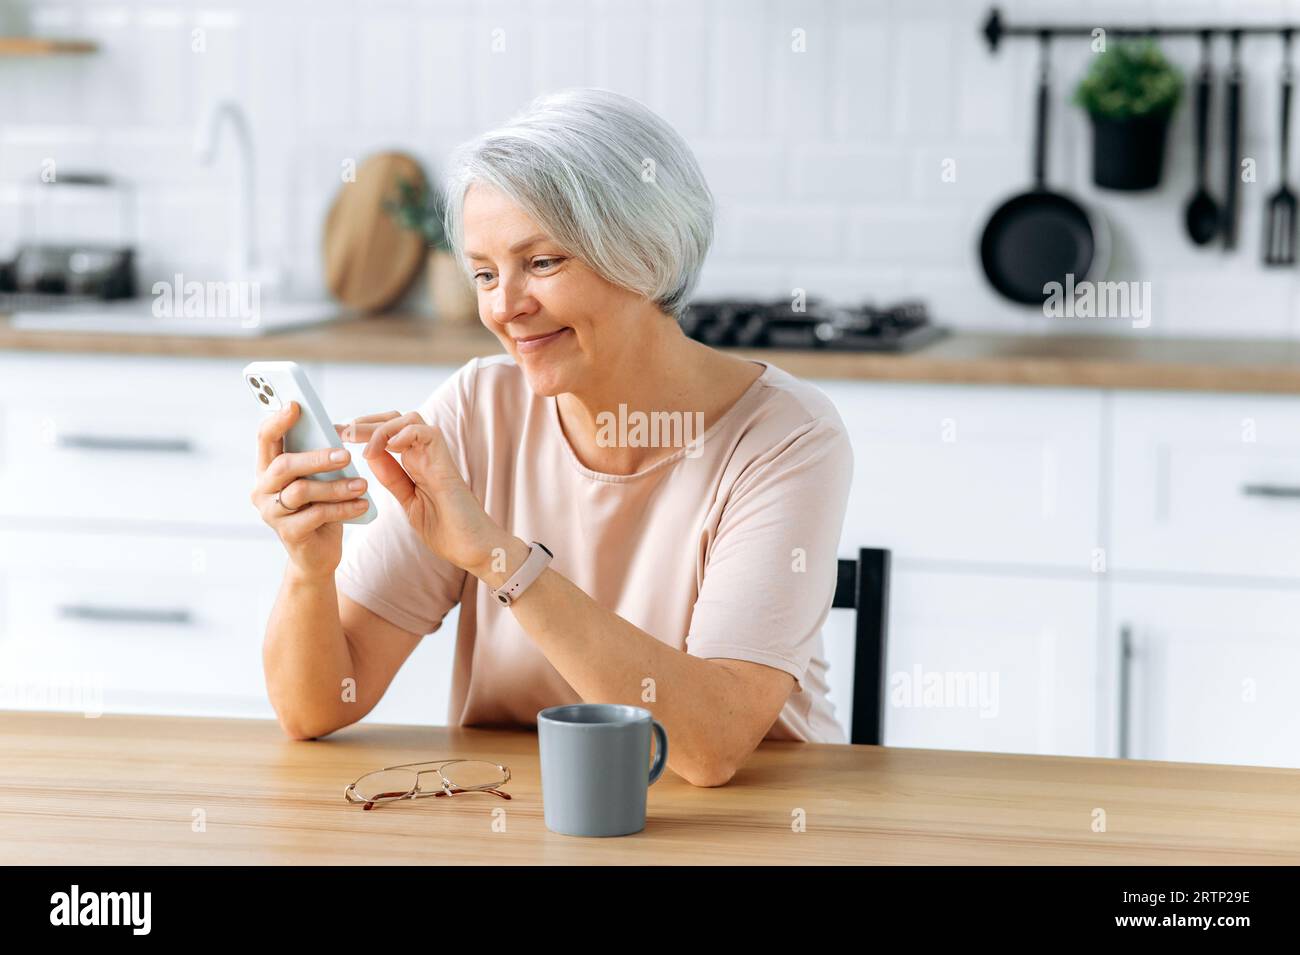 Glückliche, hübsche, weiße, grauhaarige Frau mittleren Alters, sitzt zu Hause in der Küche, hält ihr Smartphone in der Hand, benutzt es, um in sozialen Netzwerken zu kommunizieren, Nachrichten zu lesen, macht eine Online-Bestellung, lächelt Stockfoto